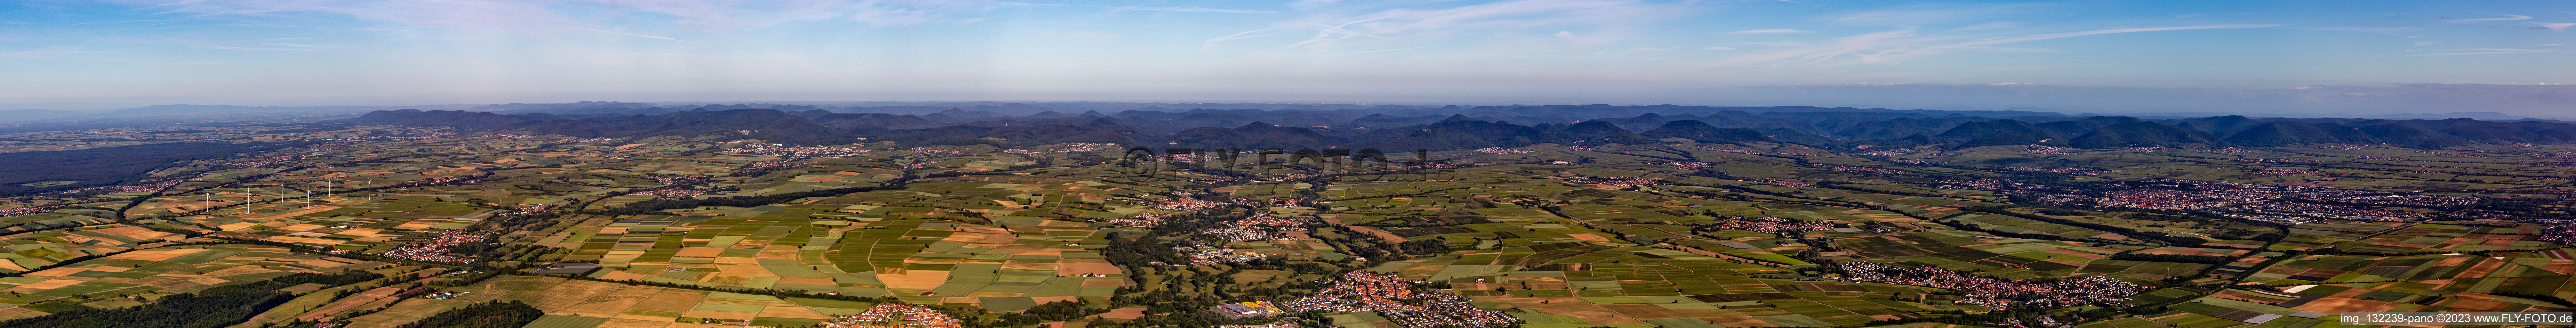 Südpfalz Panorama vom Bienwald bis Landau in Steinweiler im Bundesland Rheinland-Pfalz, Deutschland